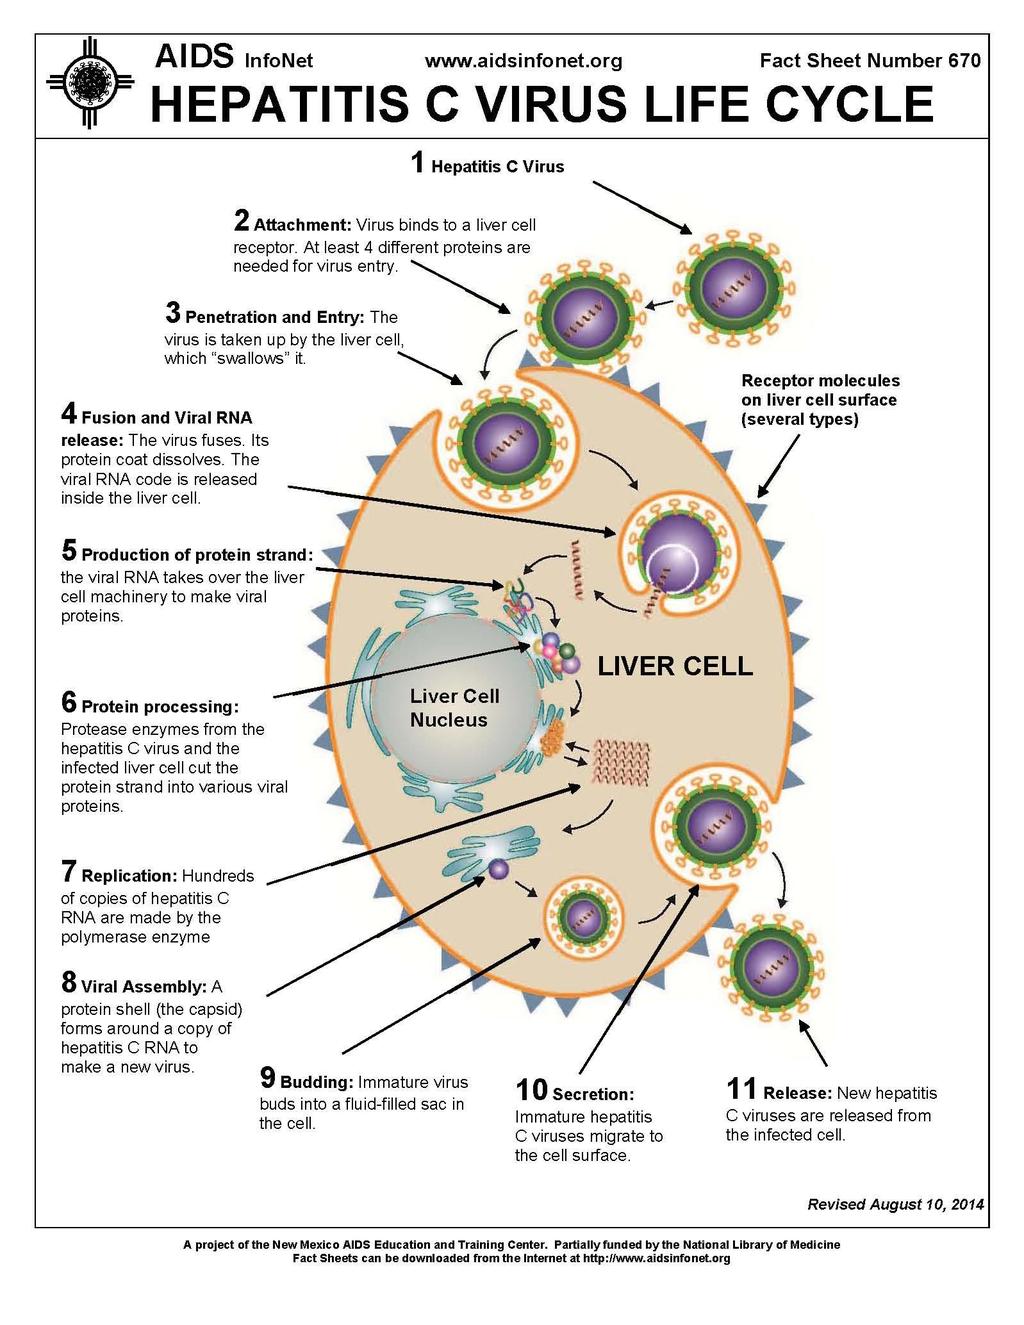 ЖИВОТНИ ЦИКЛУС ХЕПАТИТИС С ВИРУСА 1 Хепатитис С вирус 2.Везивање: Вирус се везује за рецепторе. Најмање 4 протеина су неопходна за лазак у ћелију. 3.